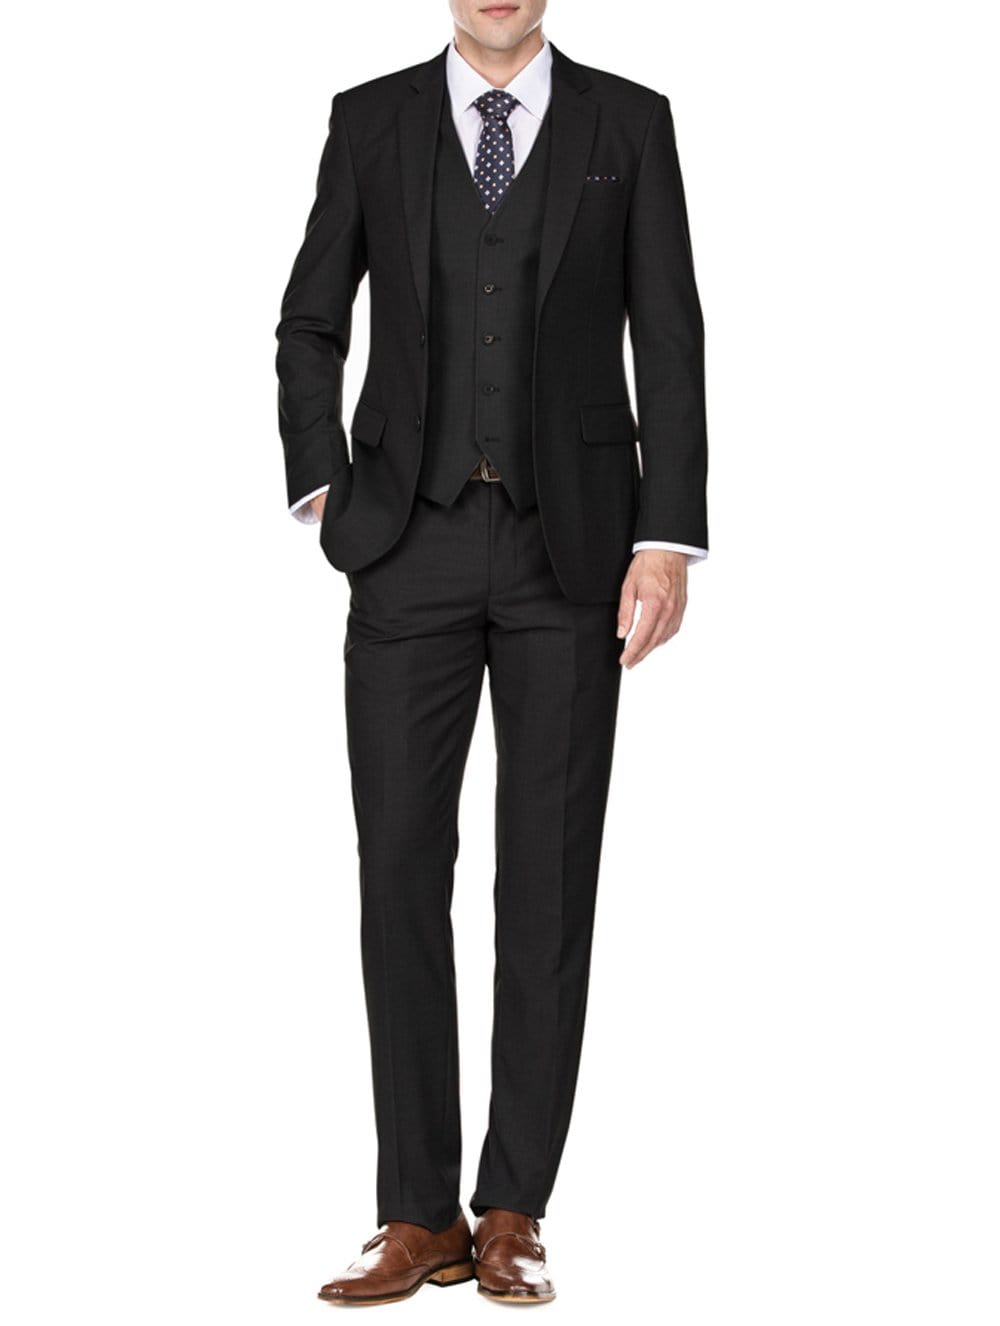 Black 3 piece suit for men –